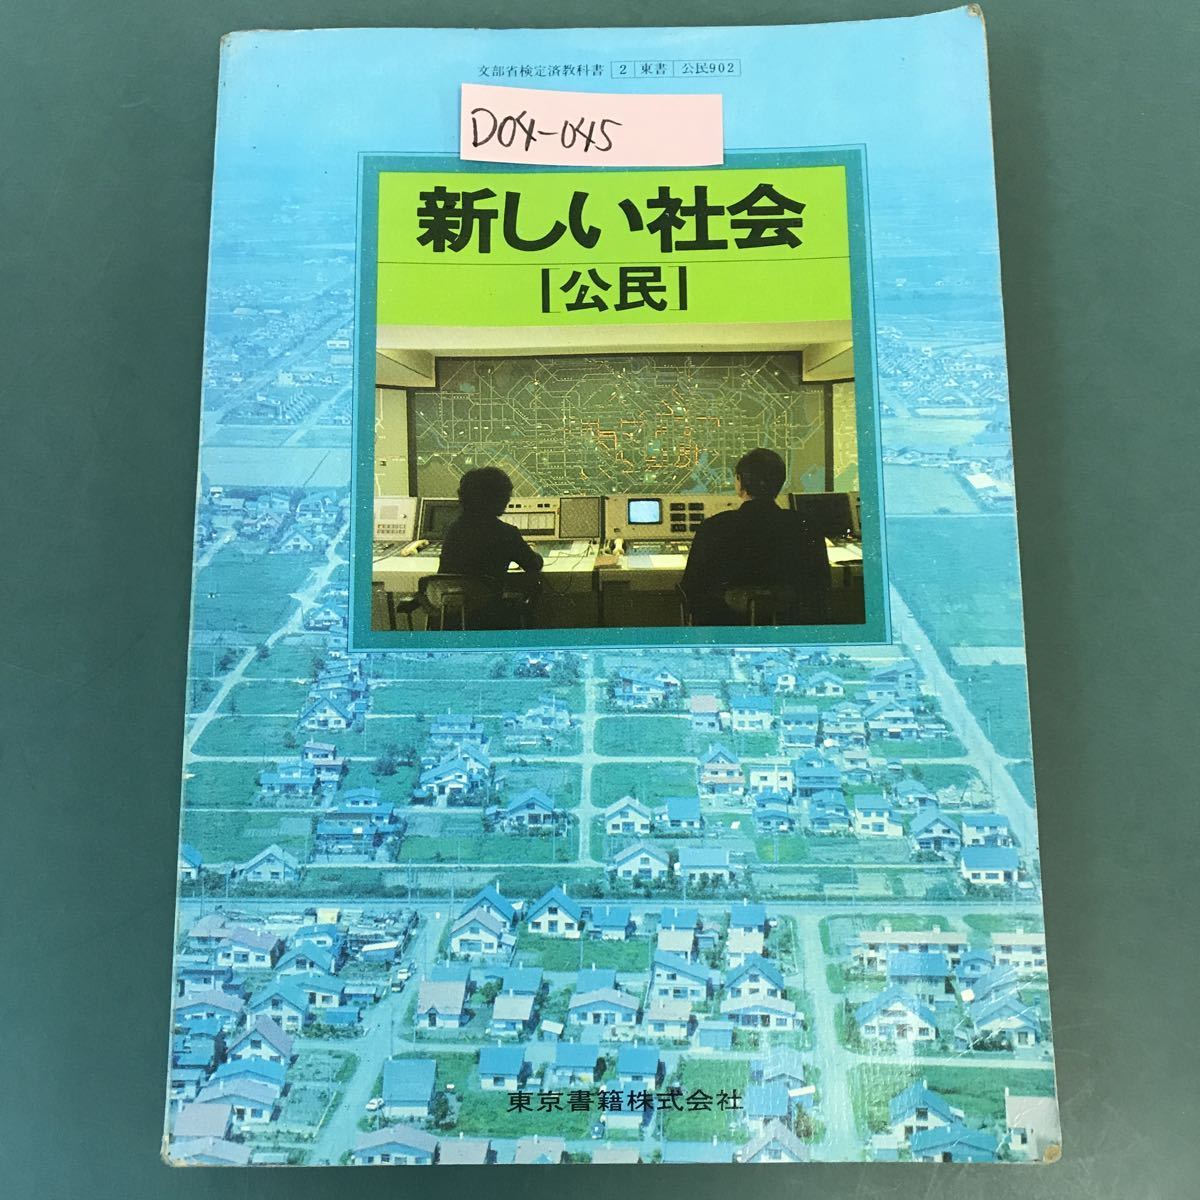 D04-045 新しい社会 公民 東京書籍 書き込み多数有り